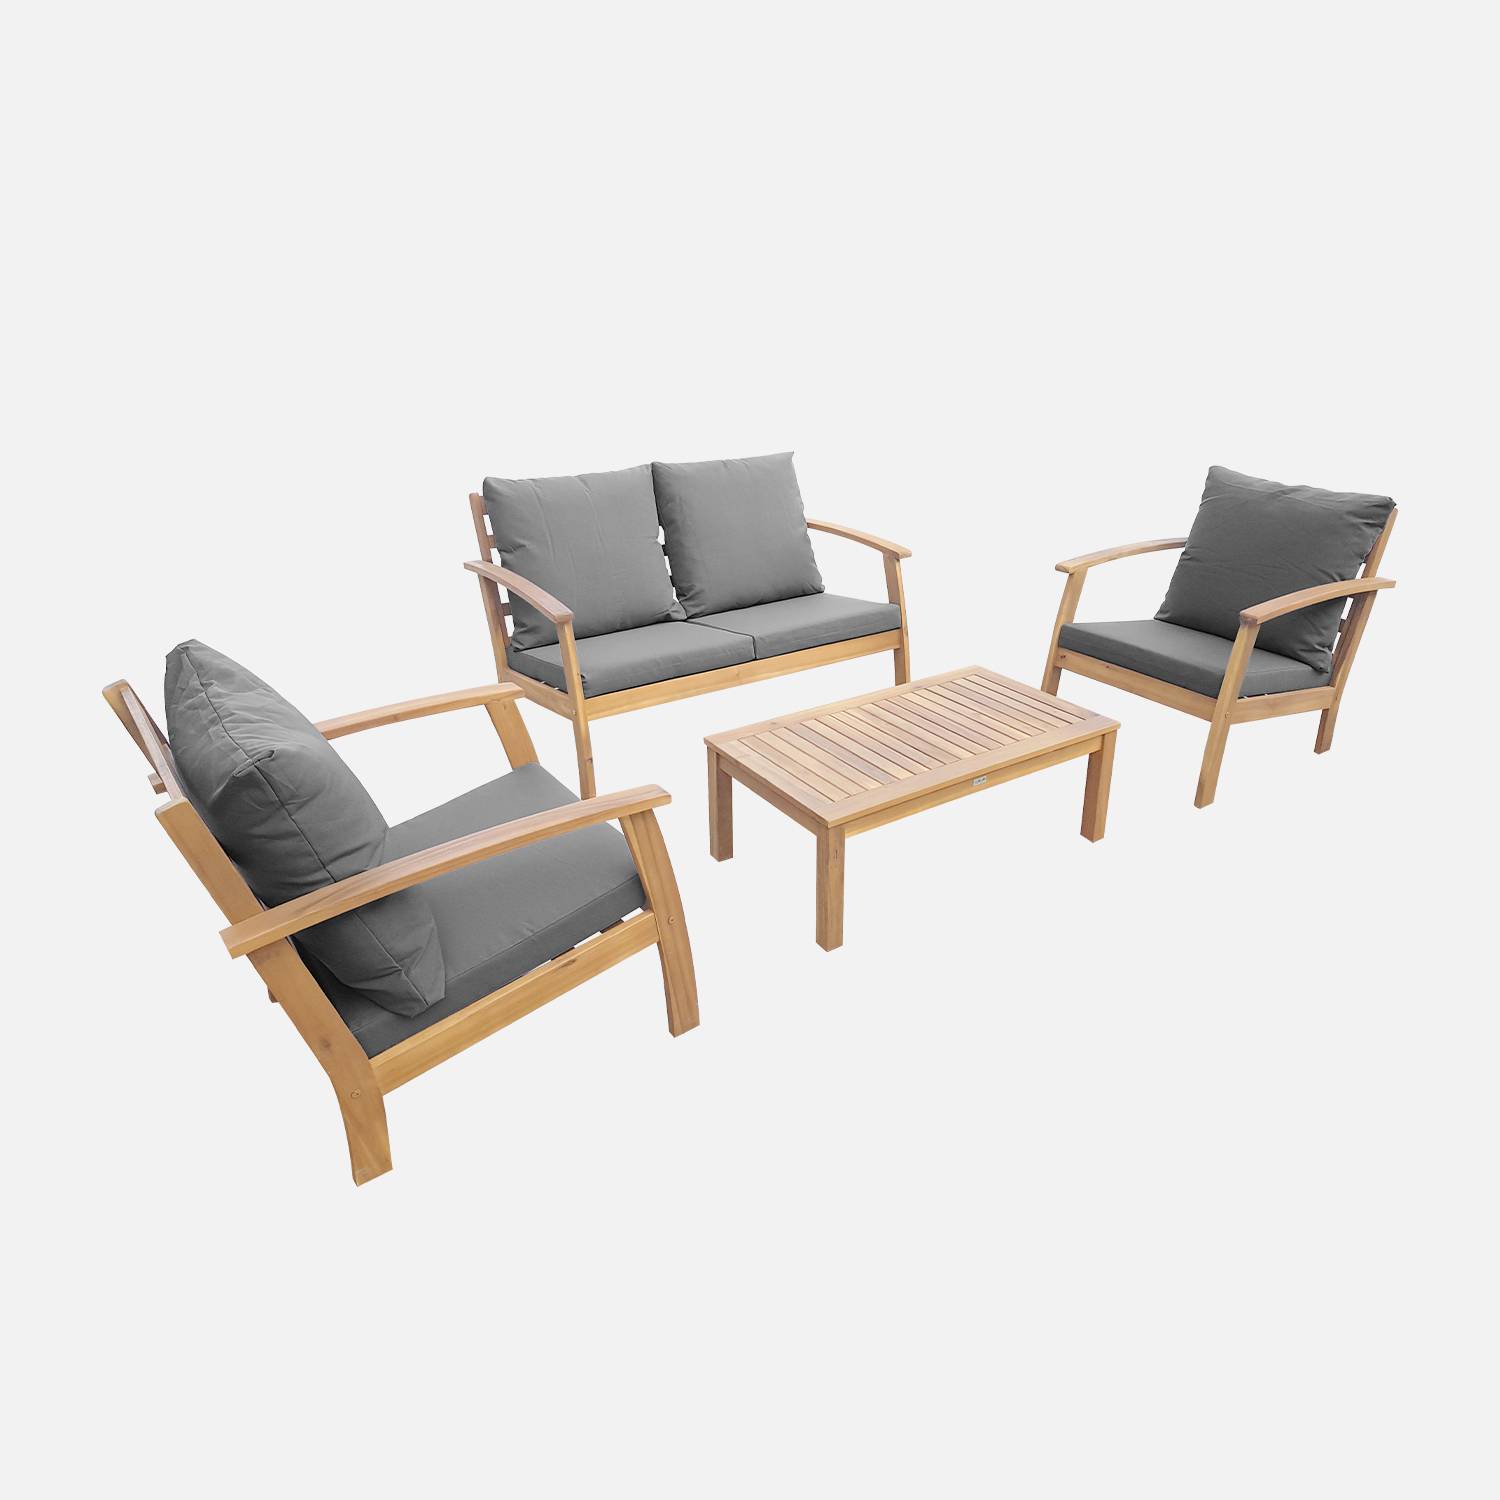 Conjunto de jardín de madera de 4 plazas - Ushuaïa - Cojines grises, sofá, sillones y mesa de centro en acacia, diseño Photo2